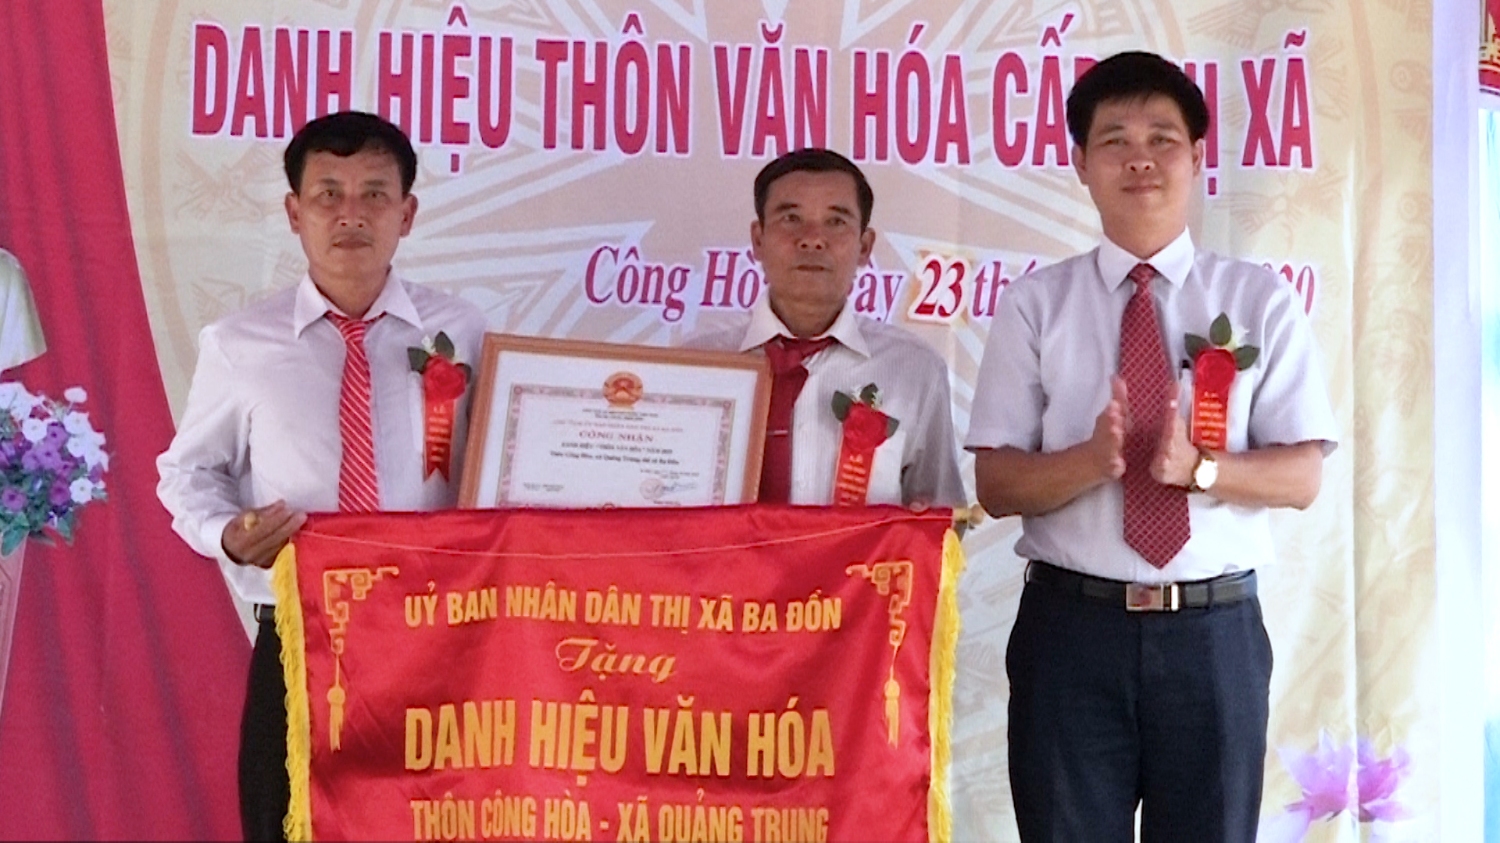 Thôn Công Hòa đón nhận danh hiệu thôn văn hóa cấp thị xã.